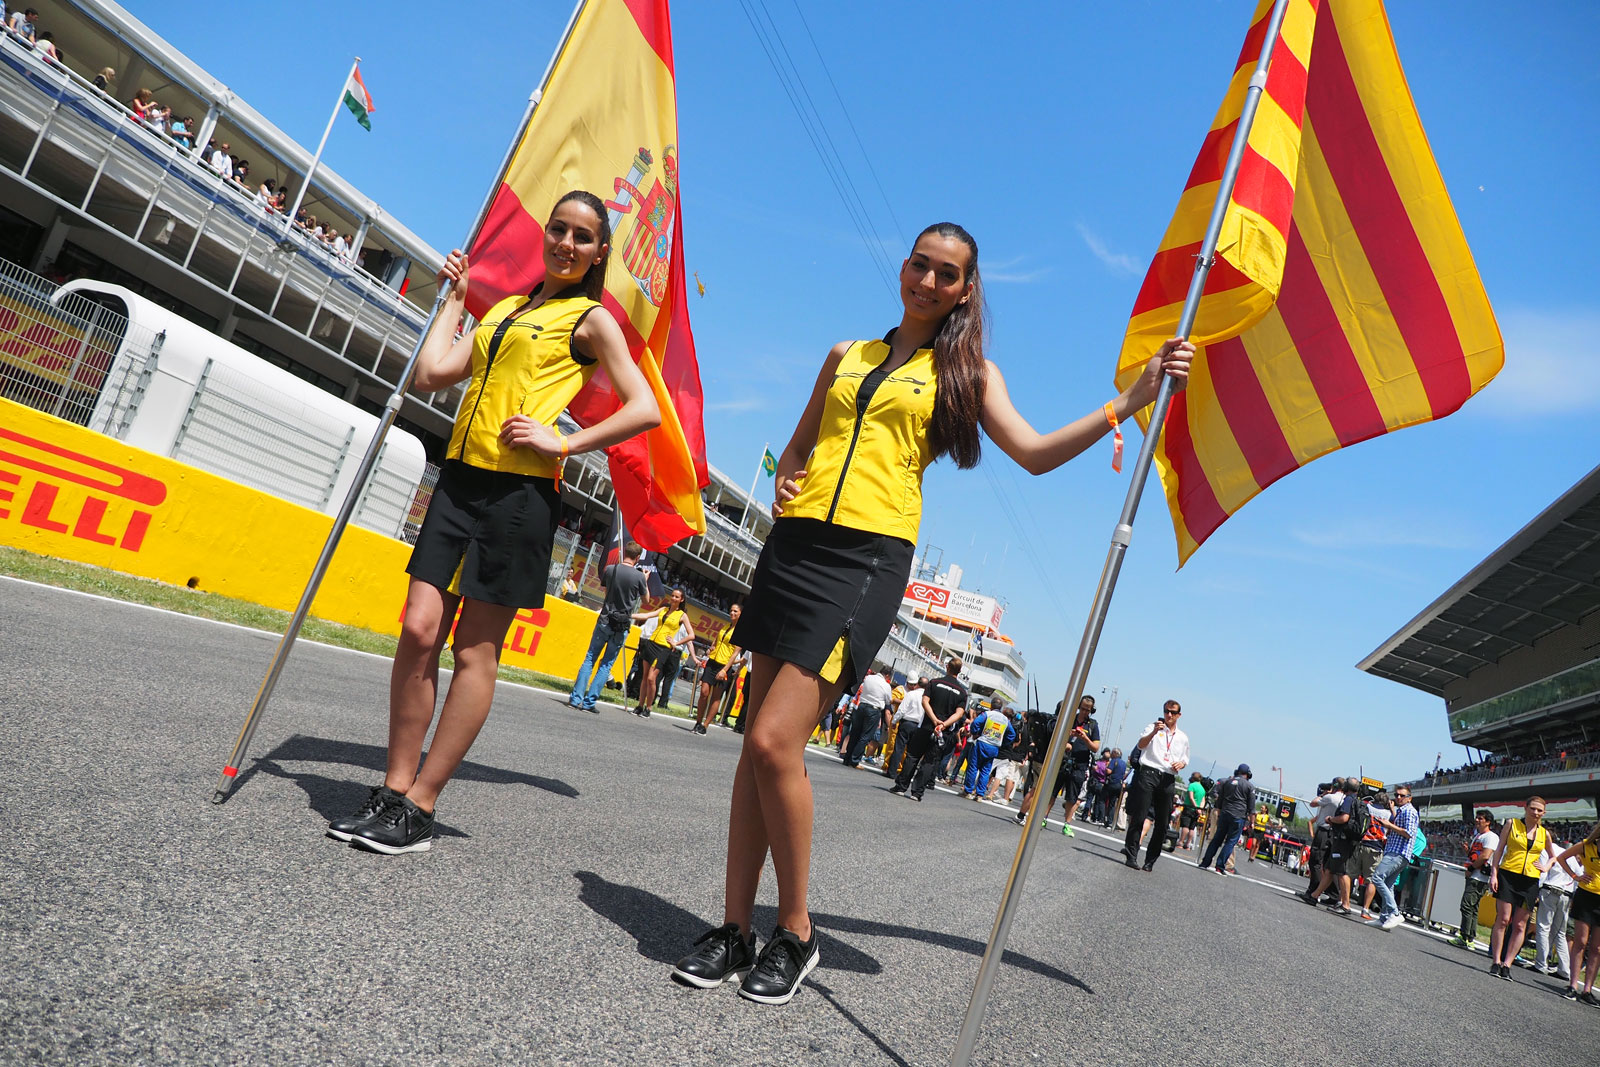 【F1ビューティー】2015 Rd.5 スペインGP編「スポーティなラテン美女たち」